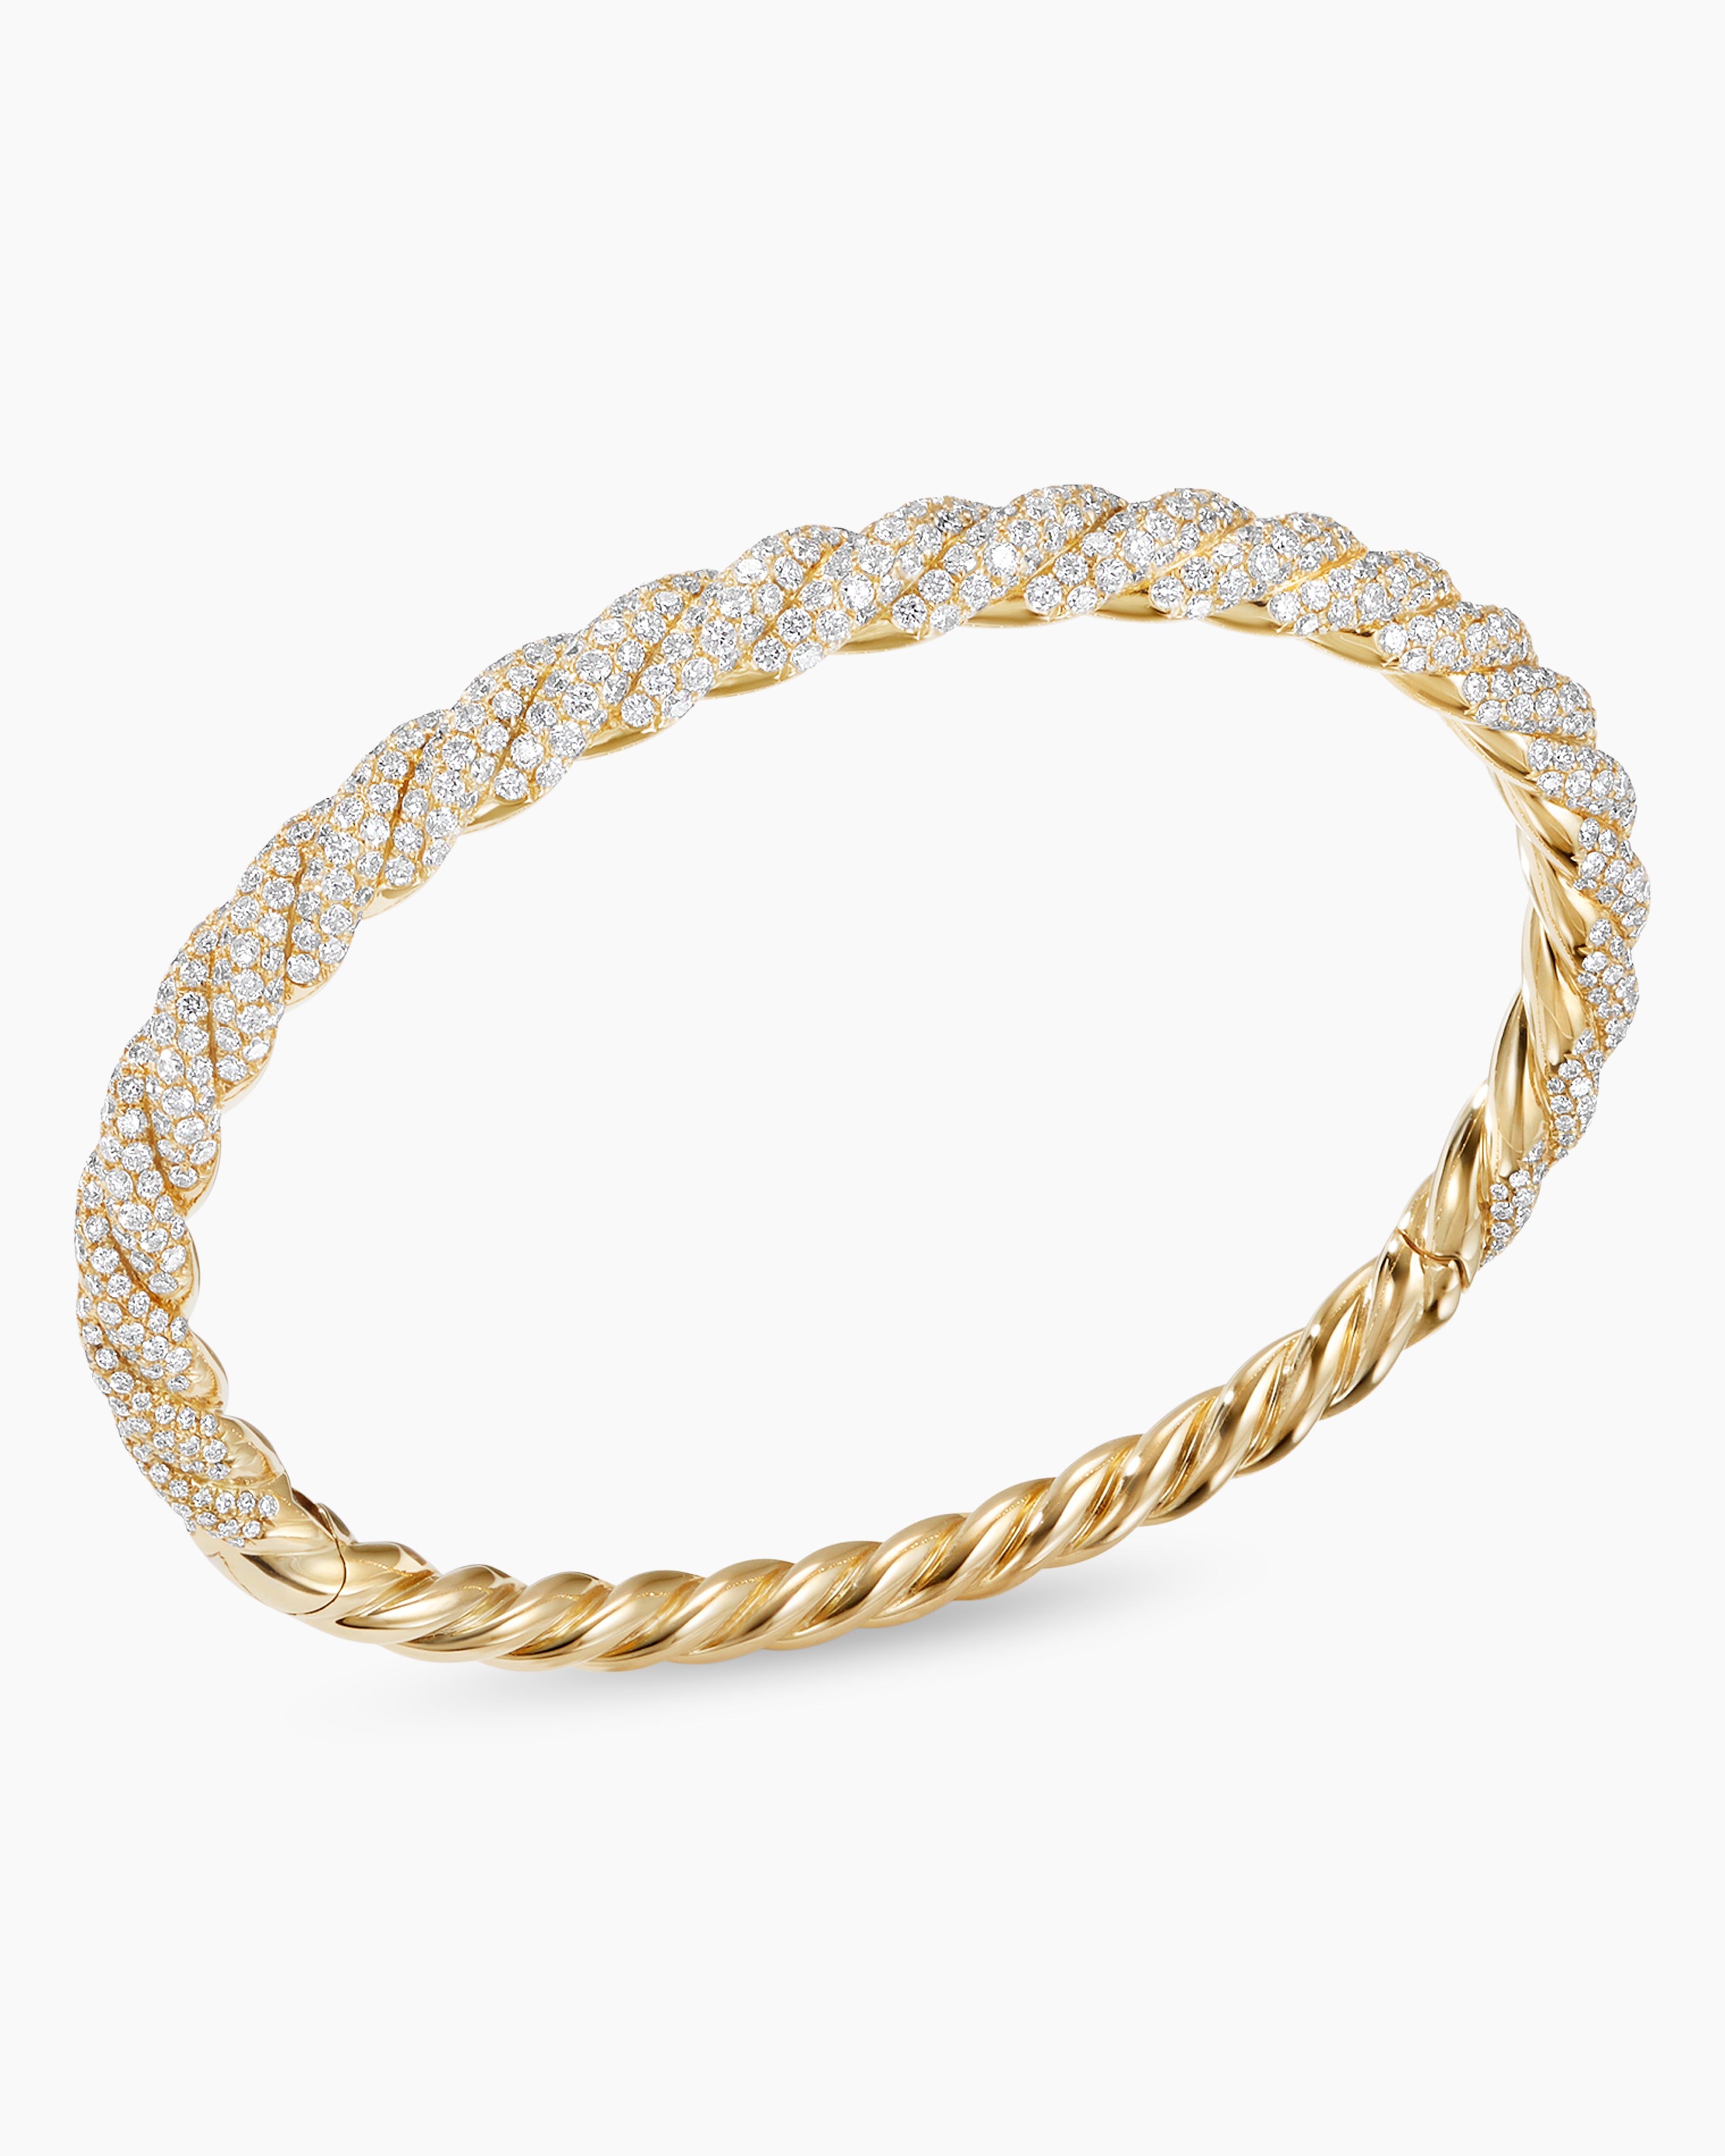 Stax Twist Bracelet in 18K Yellow Gold with Pavé Diamonds